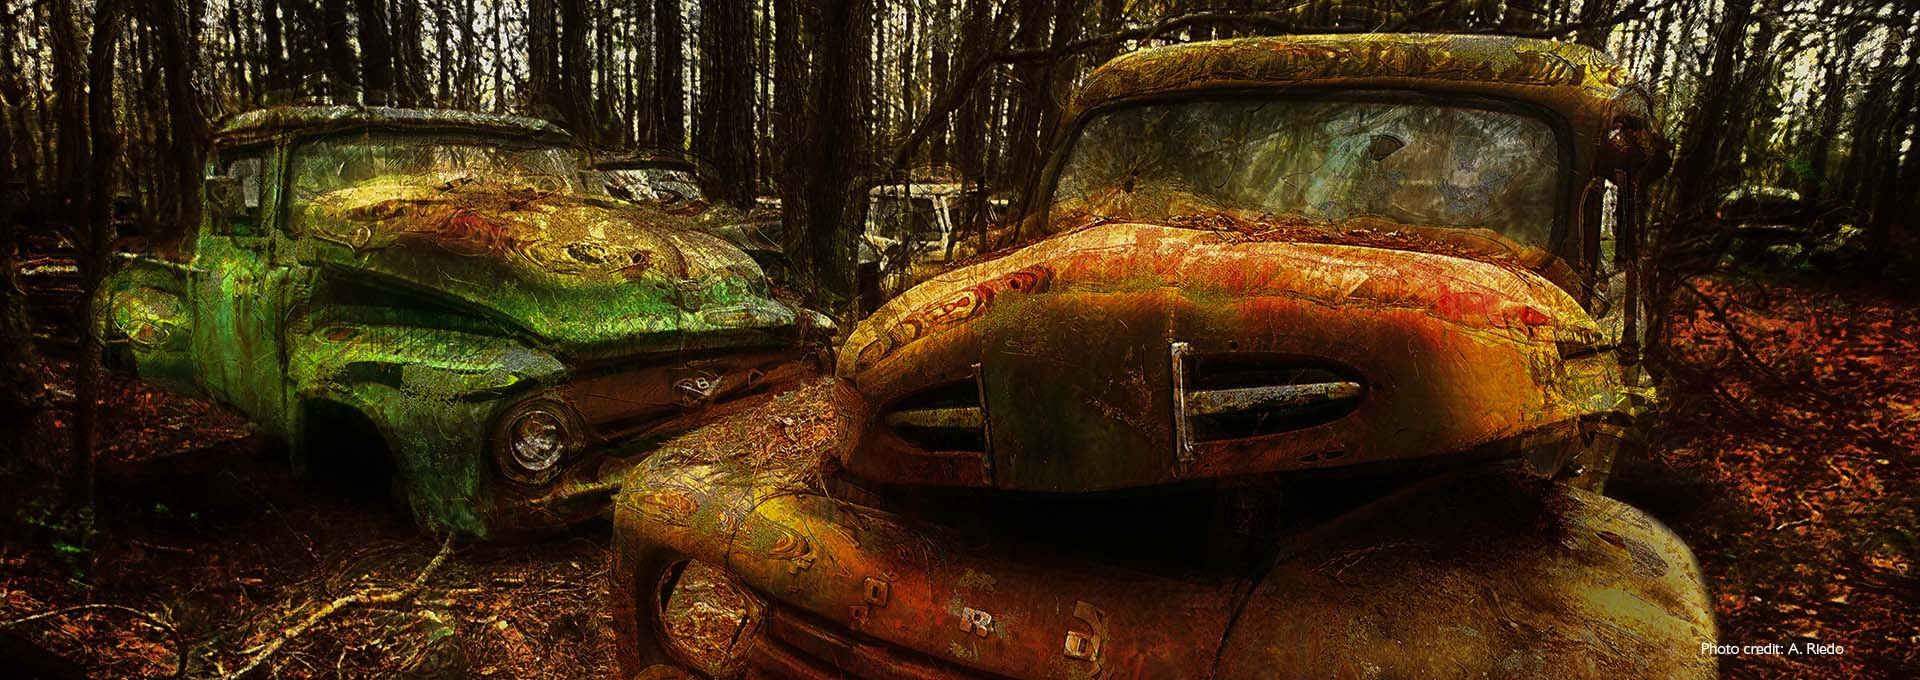 Imagen de dos viejos coches verdes y marrones oxidados en un cementerio de coches en el bosque fotografiada por los usuarios de audífonos Bernafon Alpha